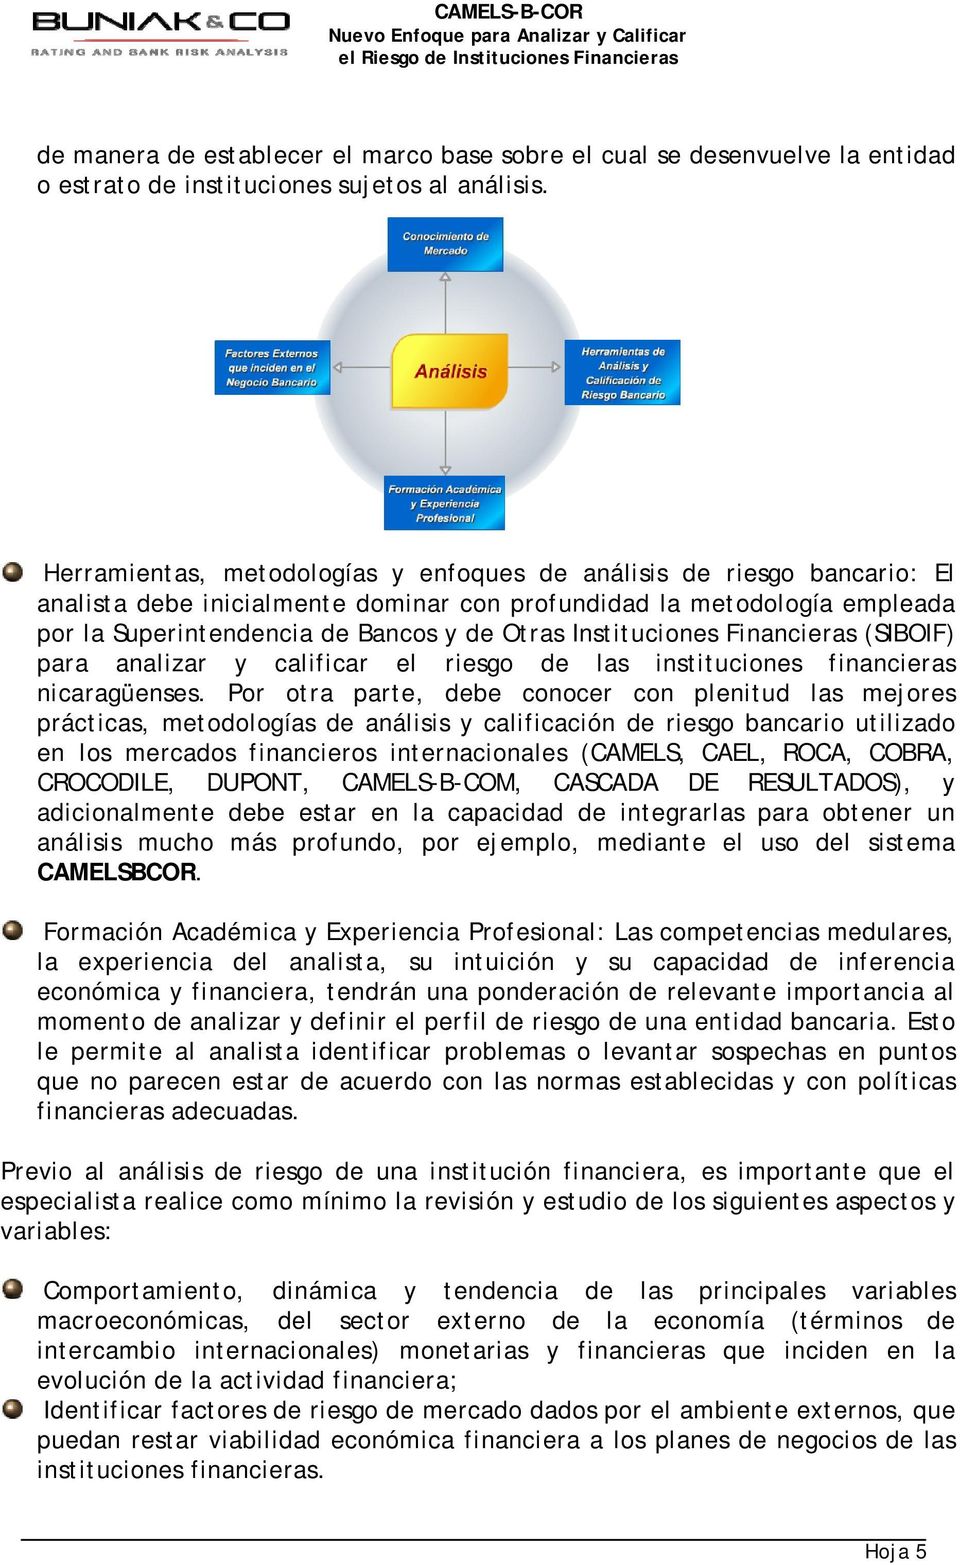 Instituciones Financieras (SIBOIF) para analizar y calificar el riesgo de las instituciones financieras nicaragüenses.